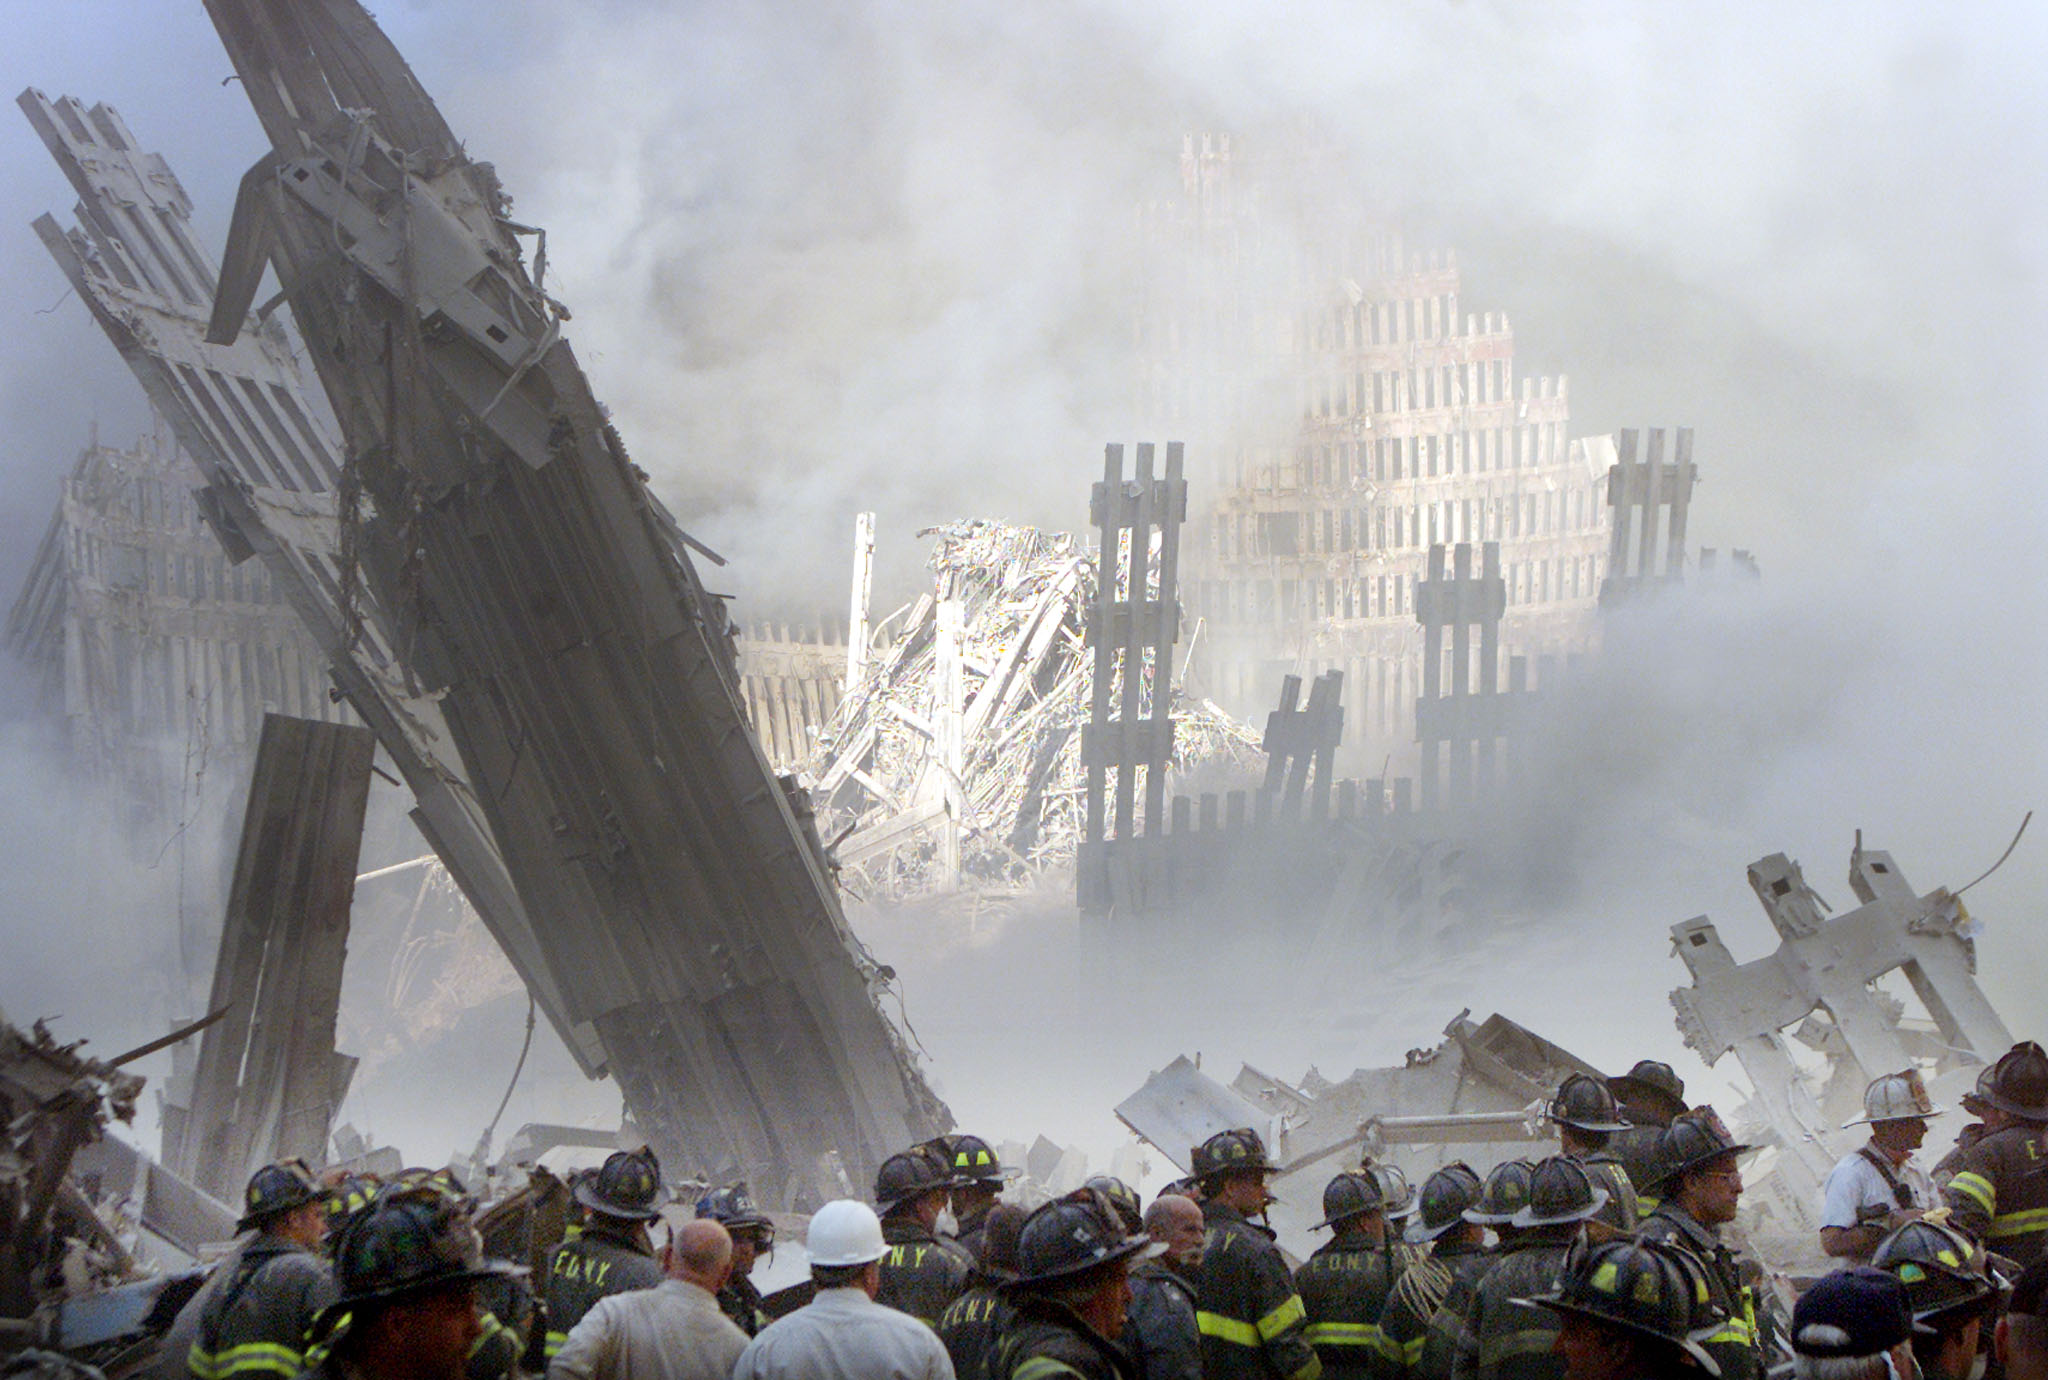 رجال إطفاء أثناء محاولتهم البحث عن ناجين تحت حطام مبنيي مركز التجارة العالمي في نيويورك